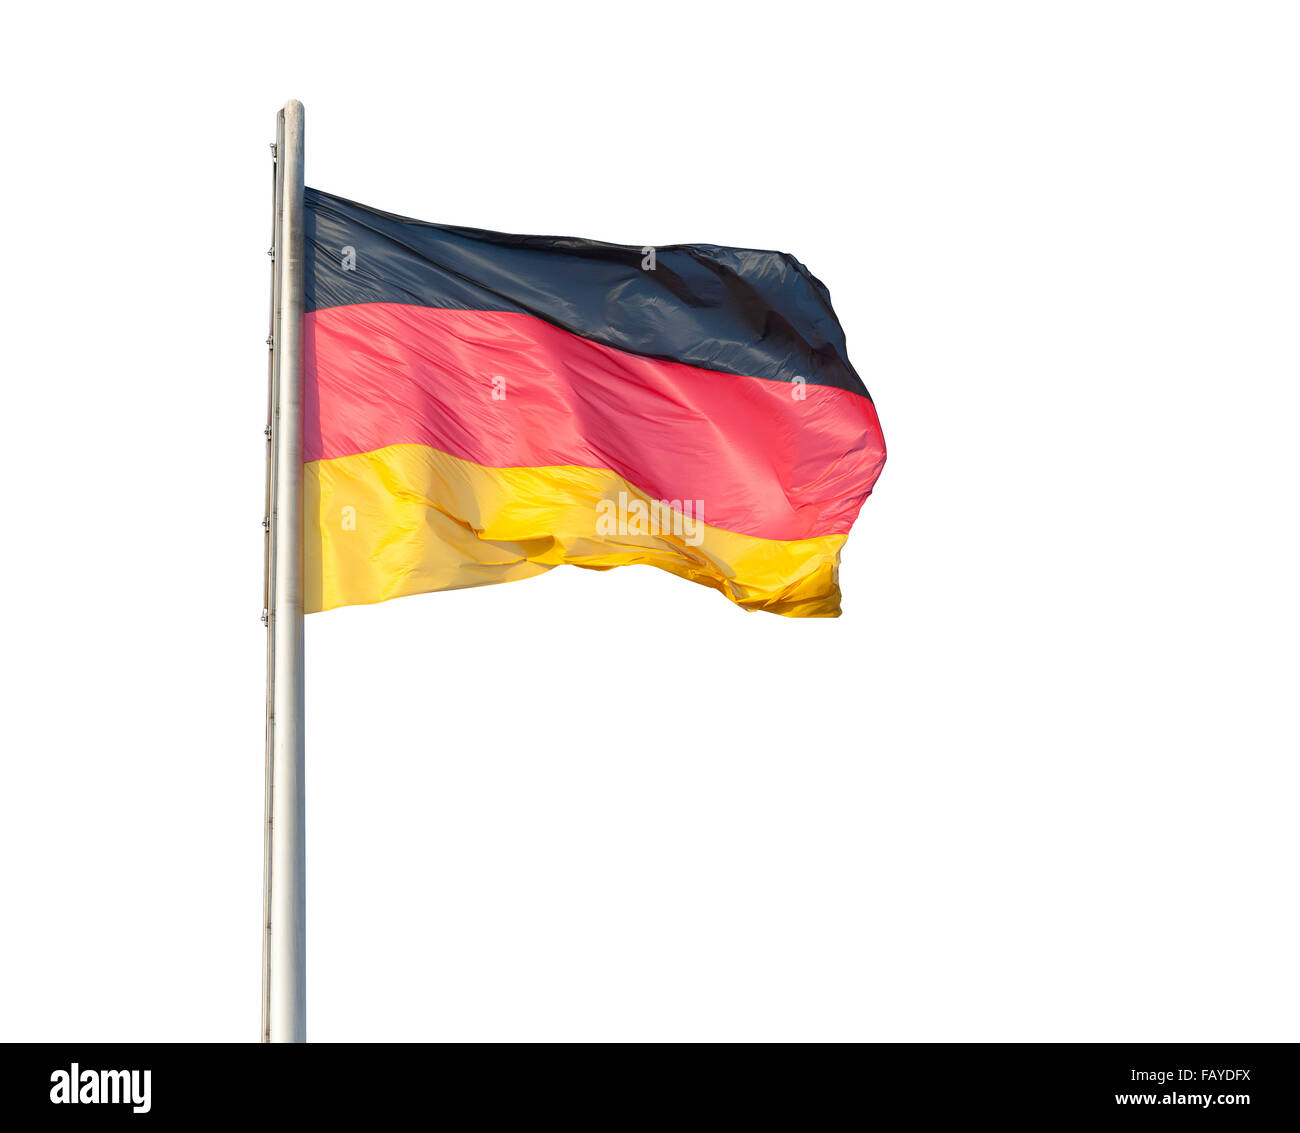 https://c8.alamy.com/compde/faydfx/die-deutsche-flagge-auf-einem-metallstab-isoliert-auf-weissem-hintergrund-faydfx.jpg